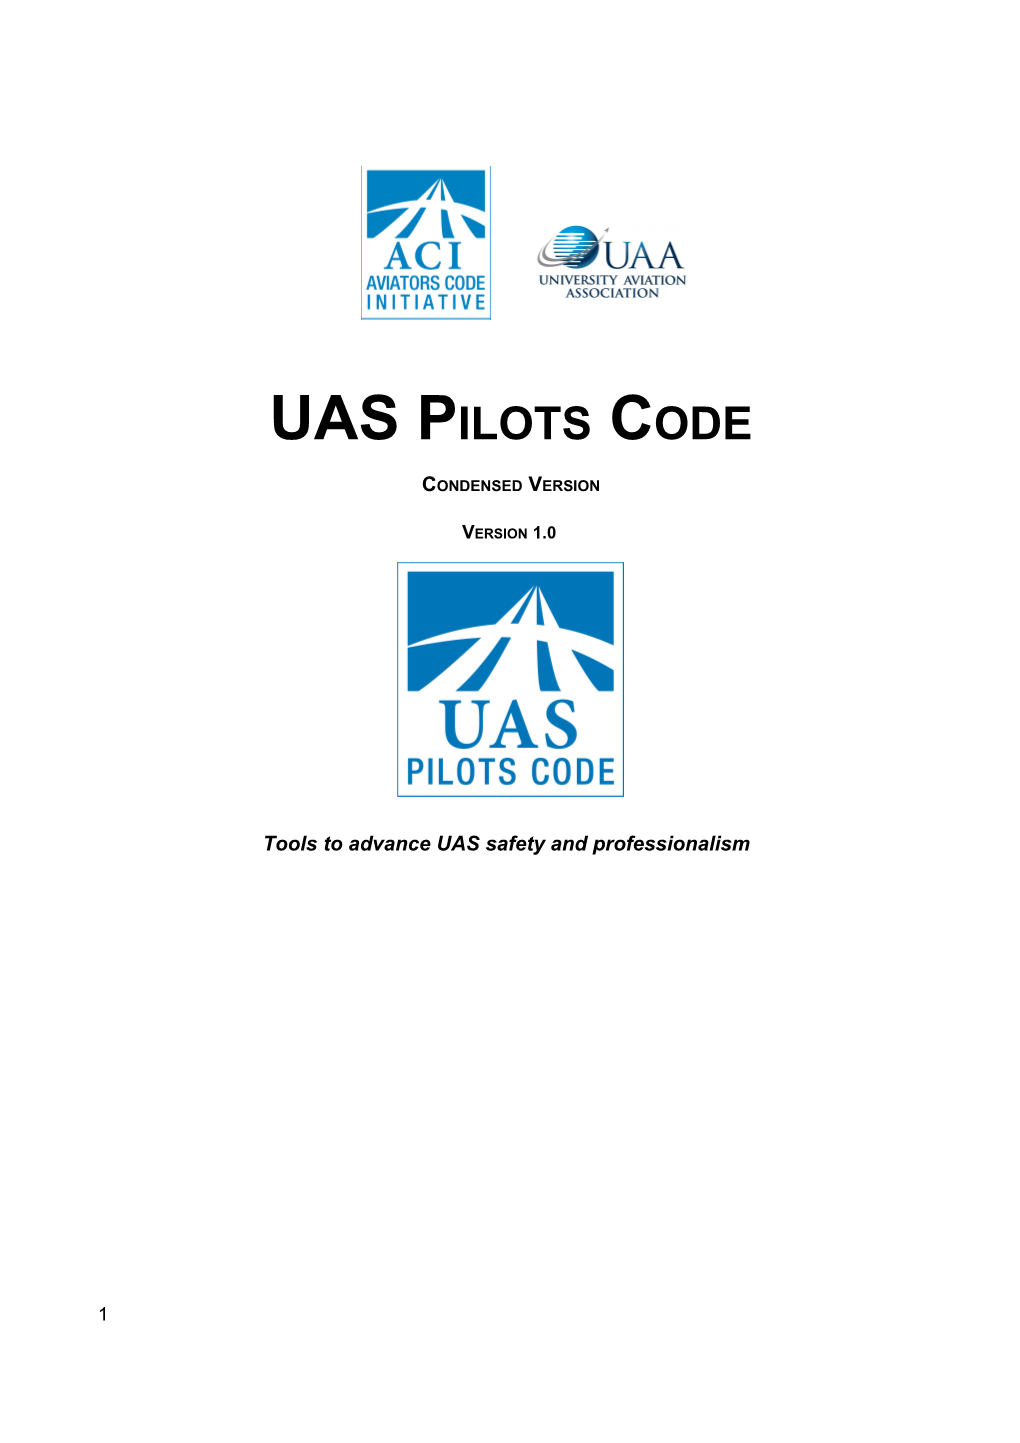 UAS Pilots Code - Condensed Version 1.0